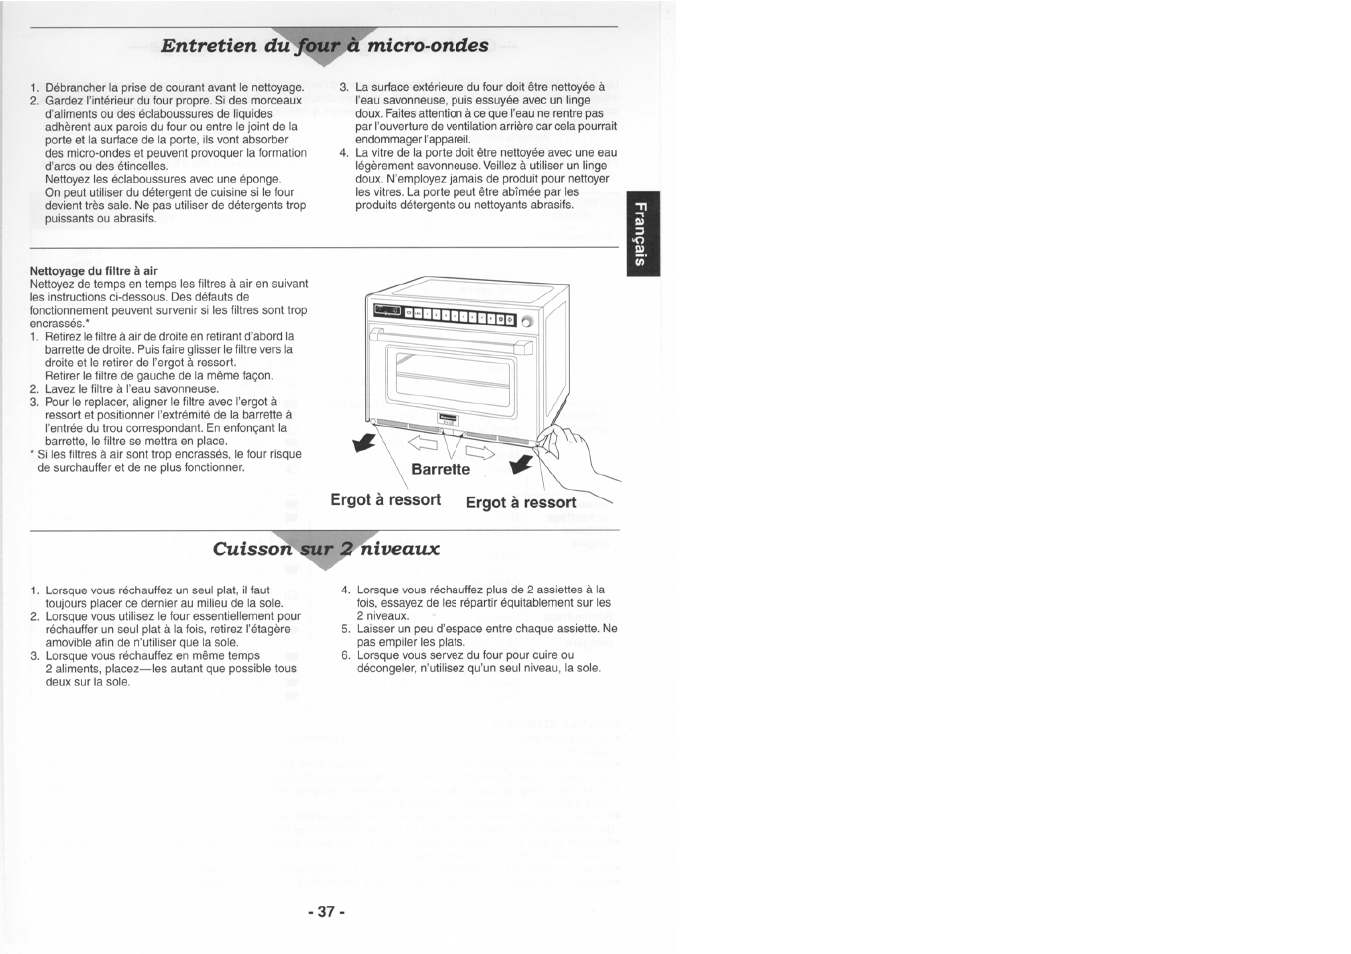 Nettoyage du filtre à air, Entretien dttfourjèimicro-ondes, Cuissoii>^ir^hiiiveaux | Panasonic NE1880 Manuel d'utilisation | Page 11 / 18